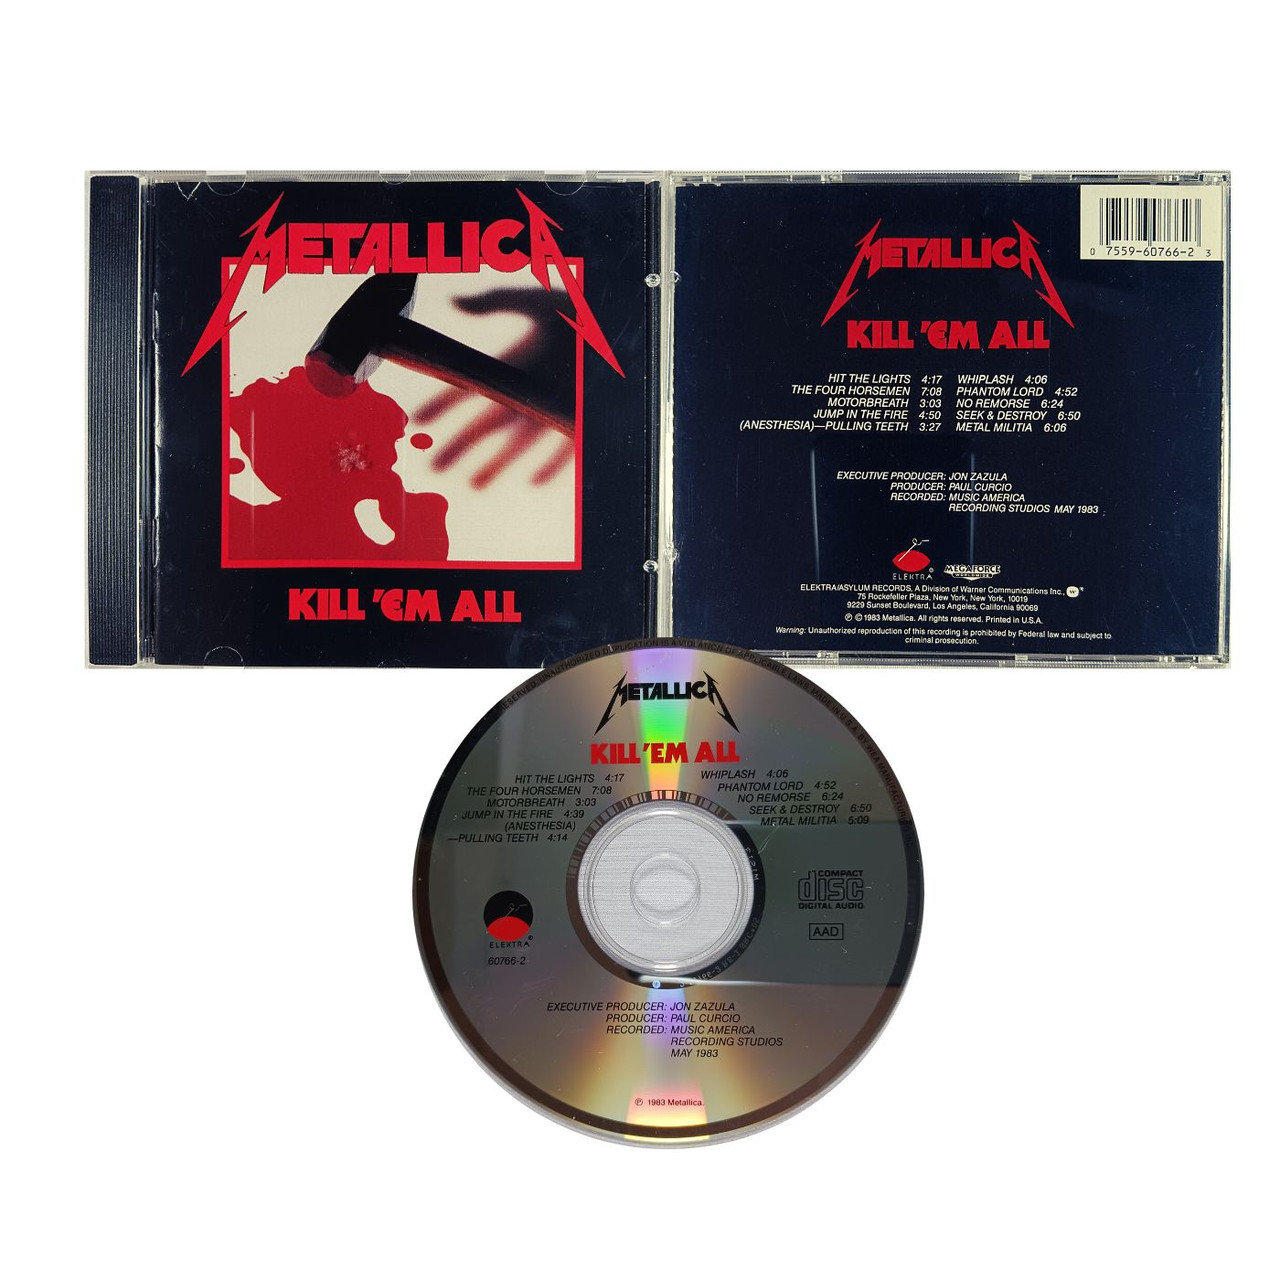 Metallica, 'Kill 'Em All' - Album Overview